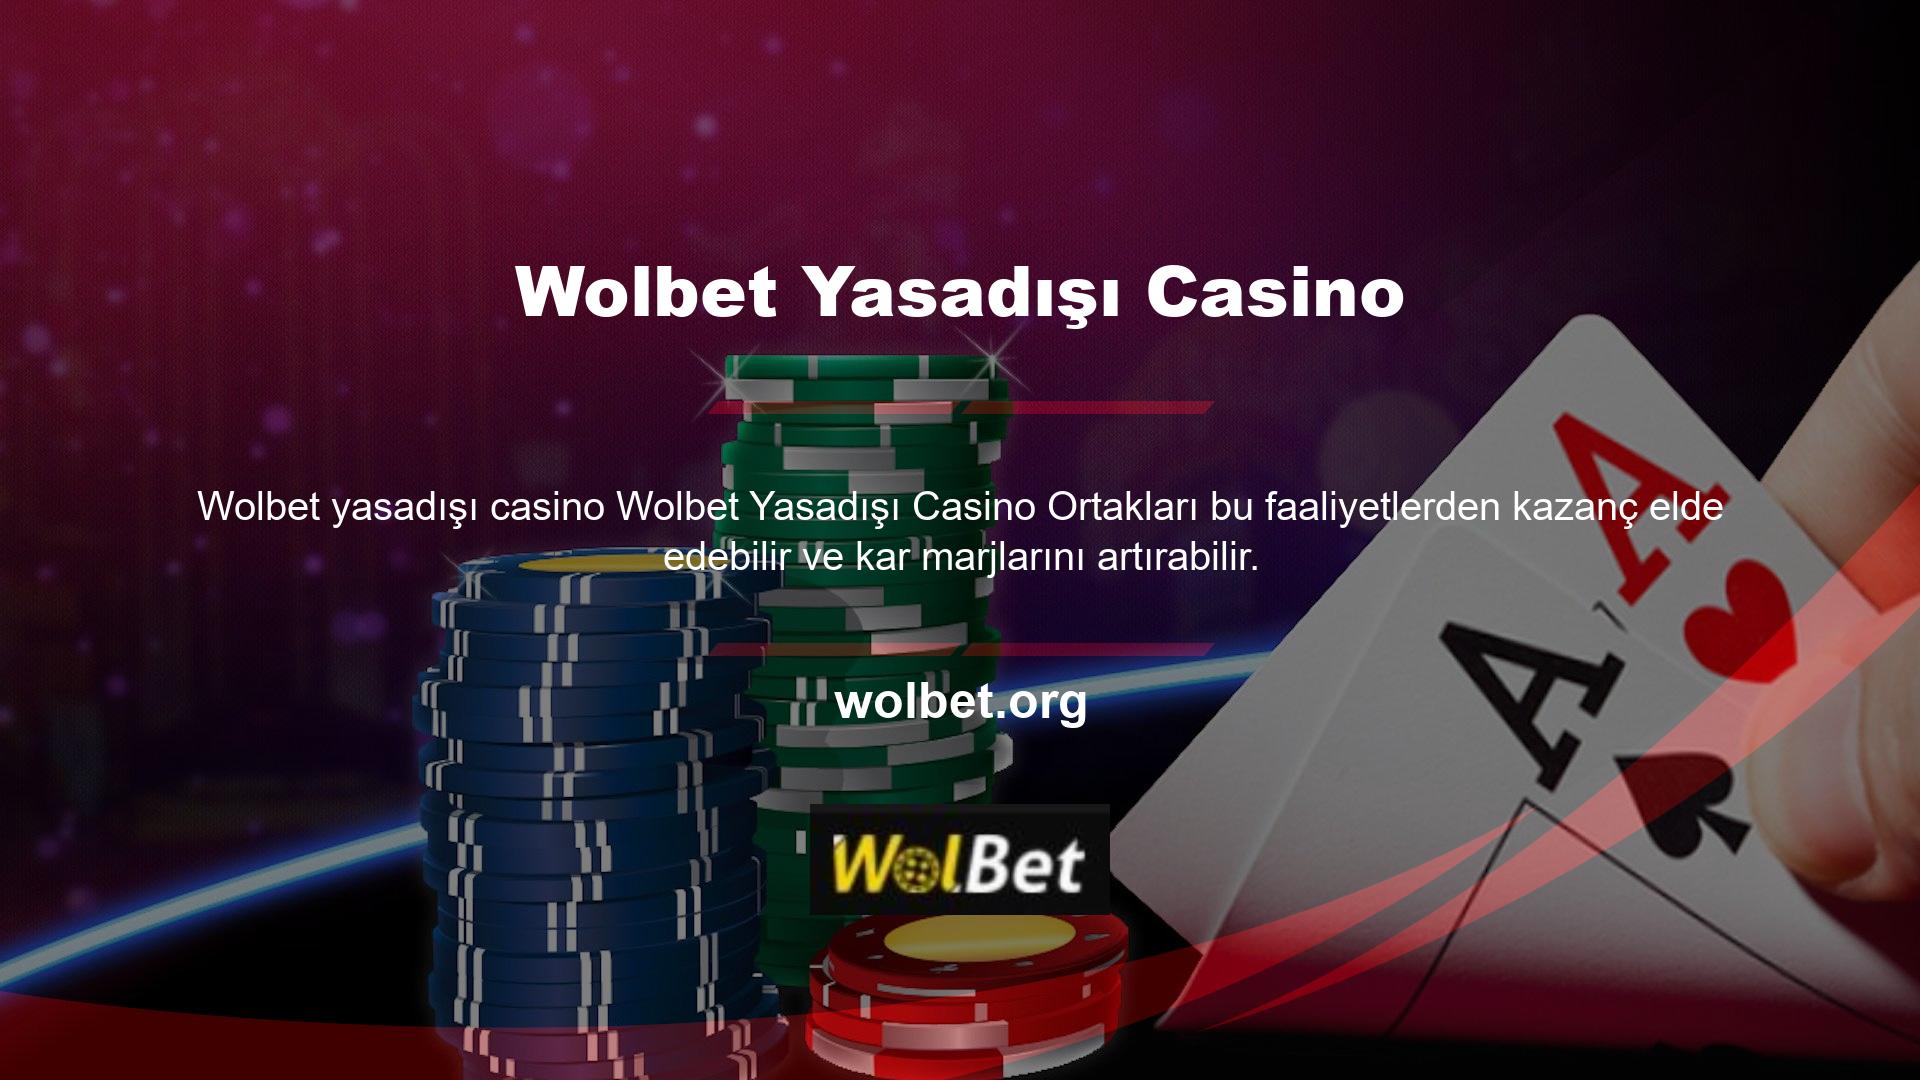 Bu promosyonlar Wolbet yasadışı casinolarına yatırdığınız miktara bağlı olarak ek gelir elde etmenizi sağlar